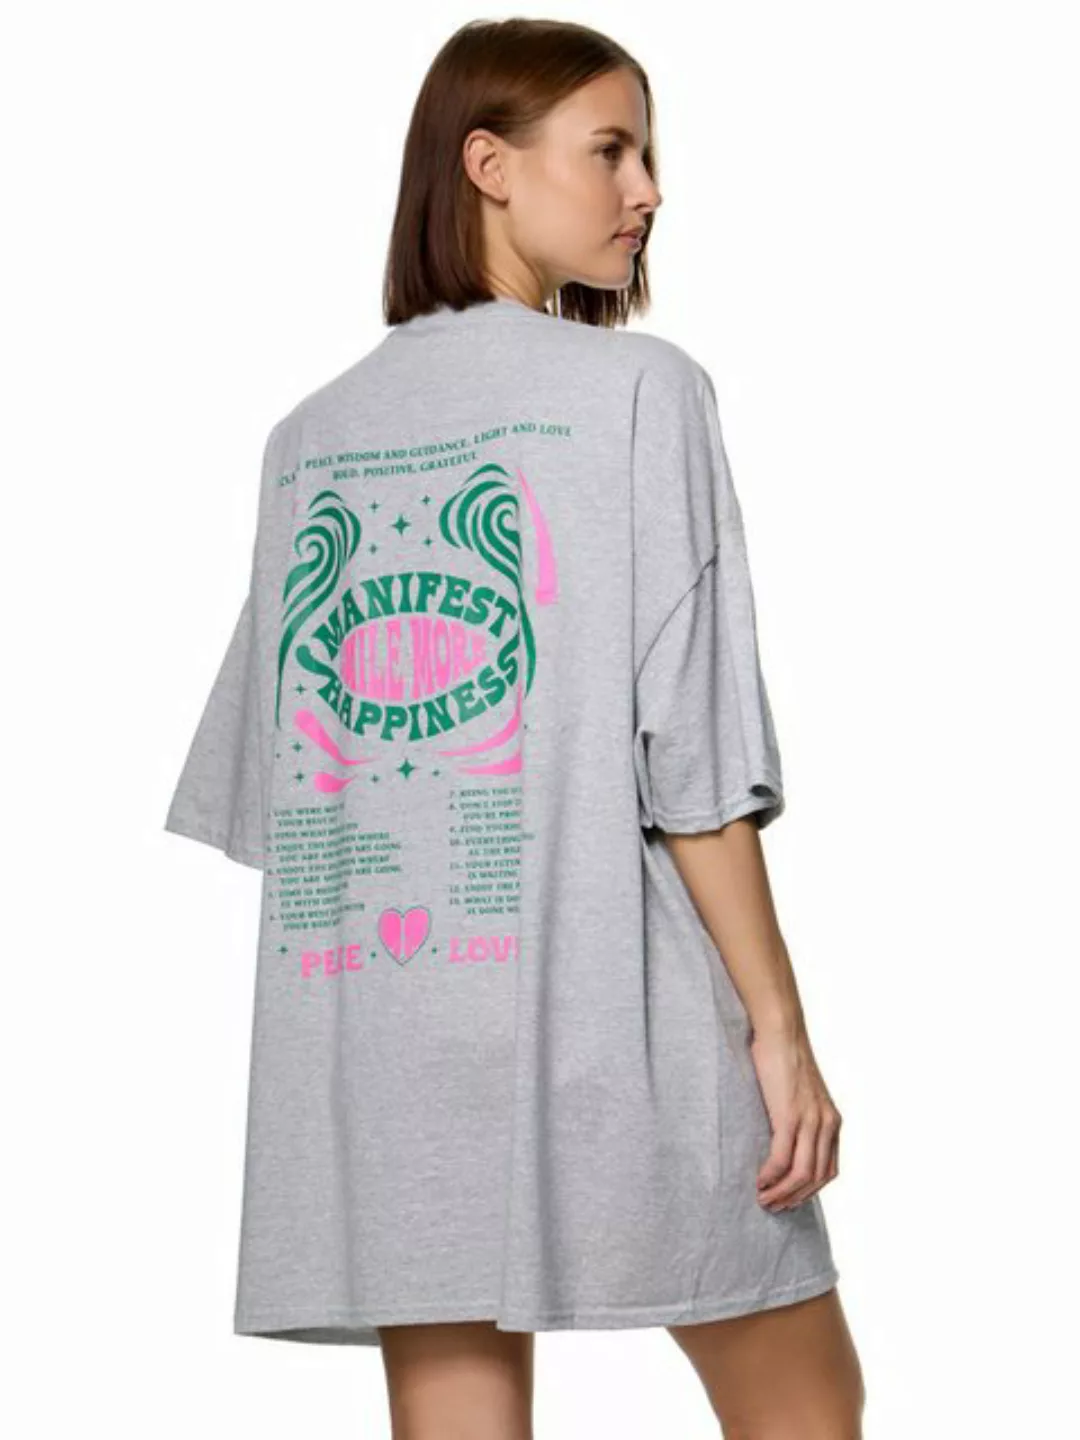 Worldclassca T-Shirt Worldclassca Oversized PEACE LOVE Print T-Shirt lang S günstig online kaufen